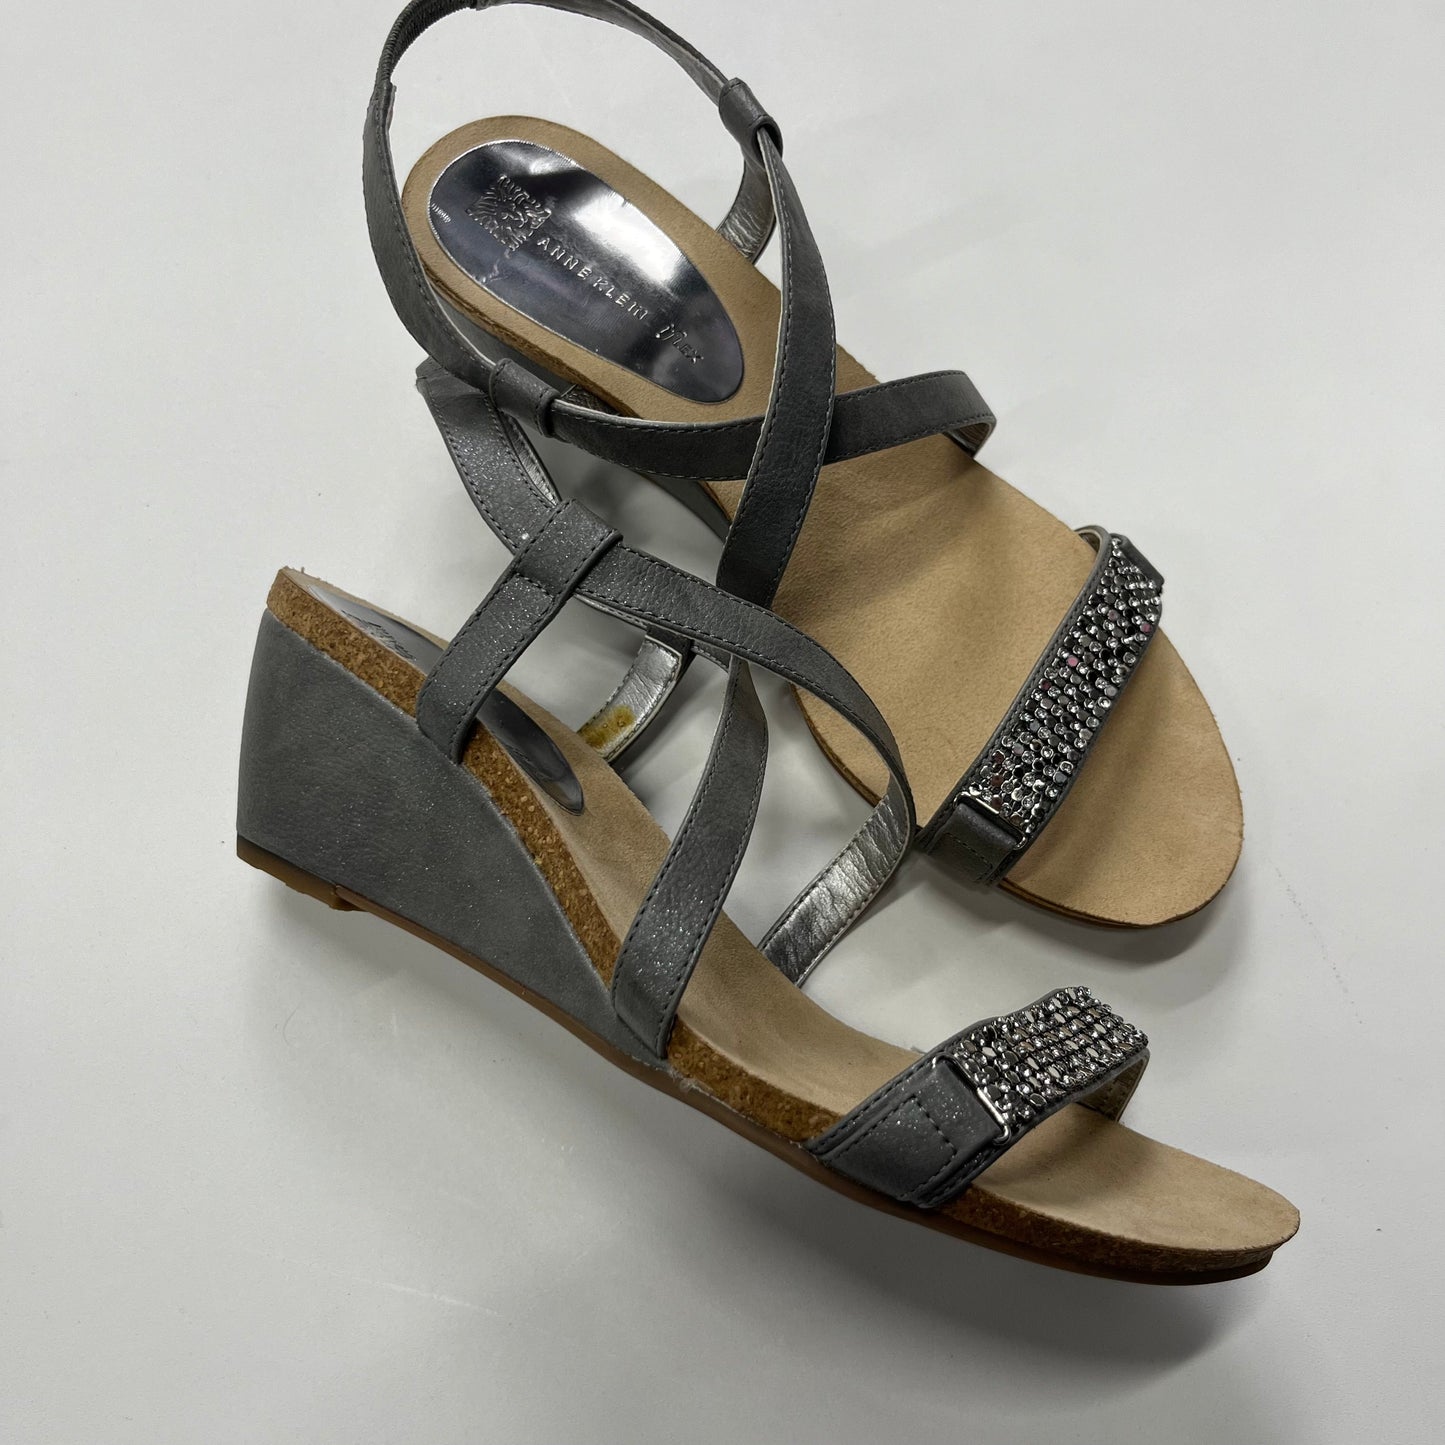 Sandals Heels Wedge By Anne Klein  Size: 7.5